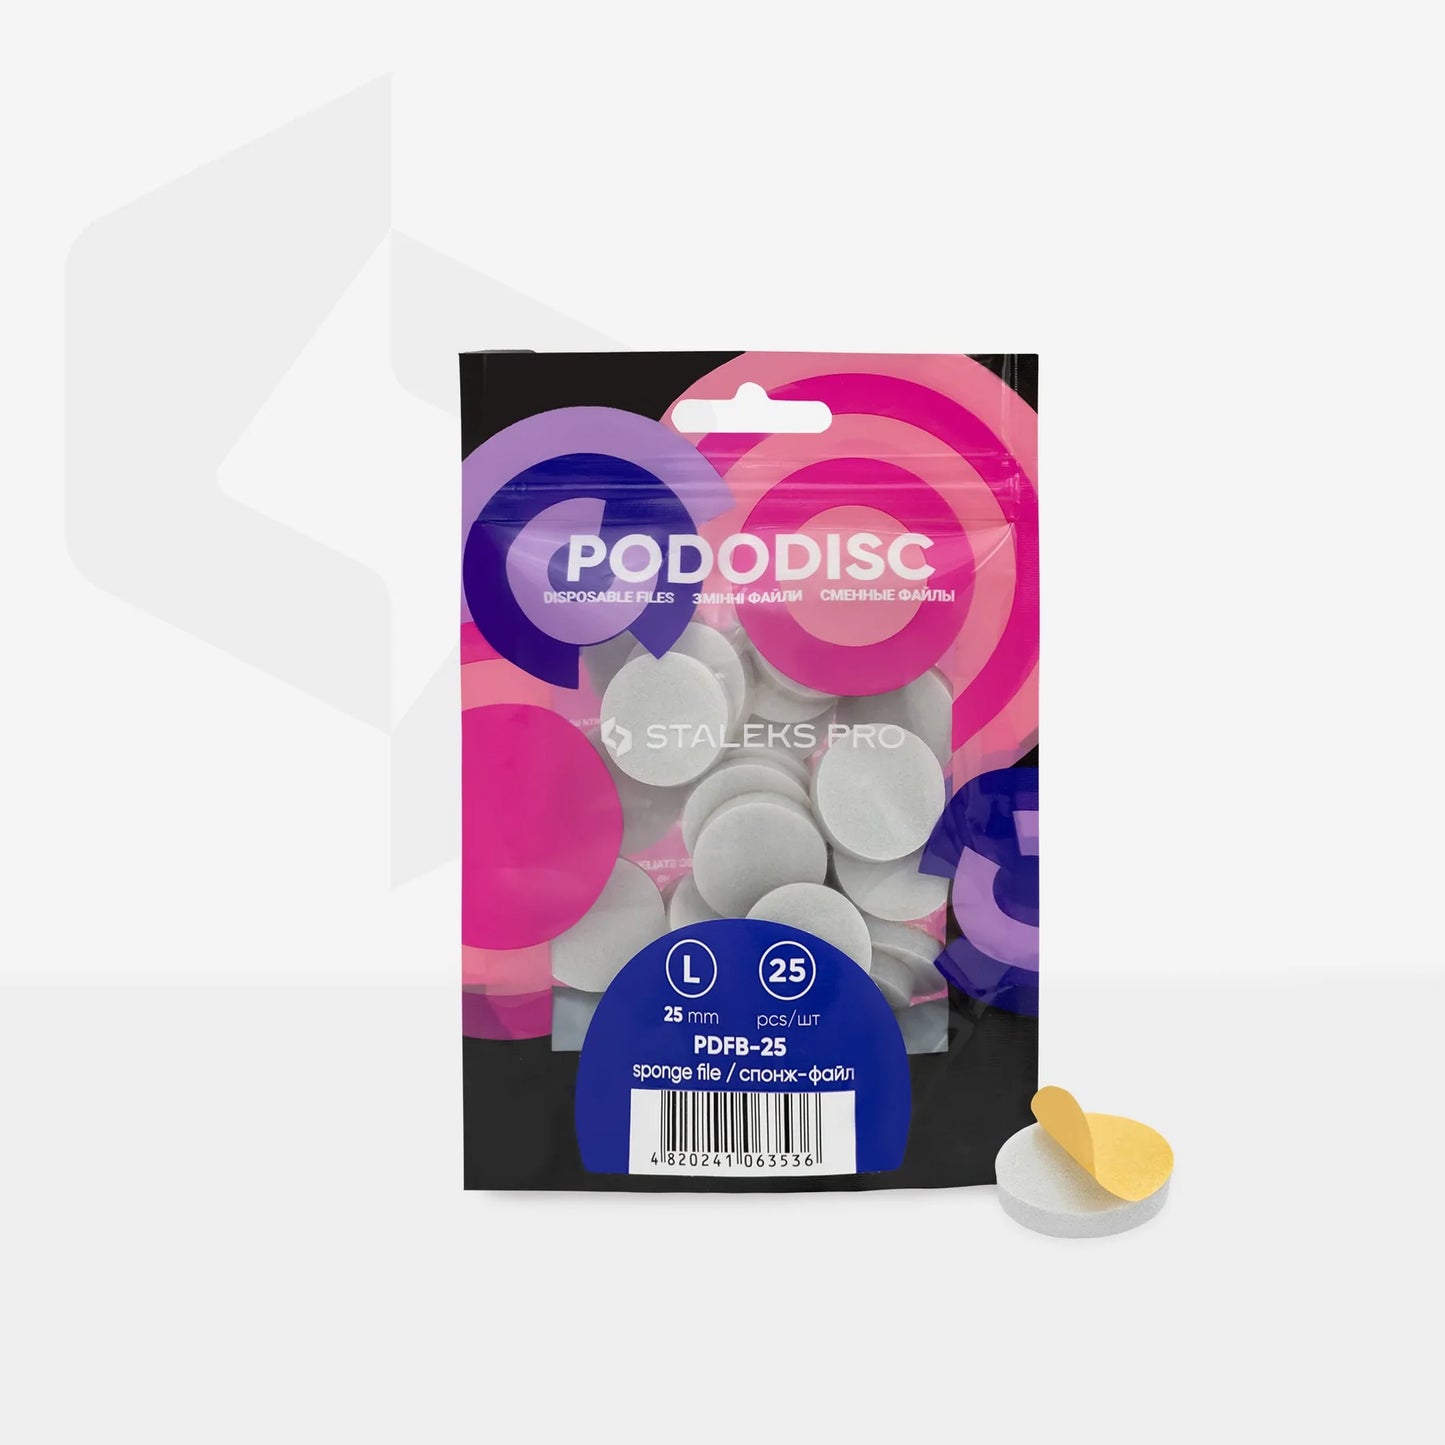 Disposable files-sponges for pedicure disc PODODISC STALEKS PRO (25 pcs) -PDFB